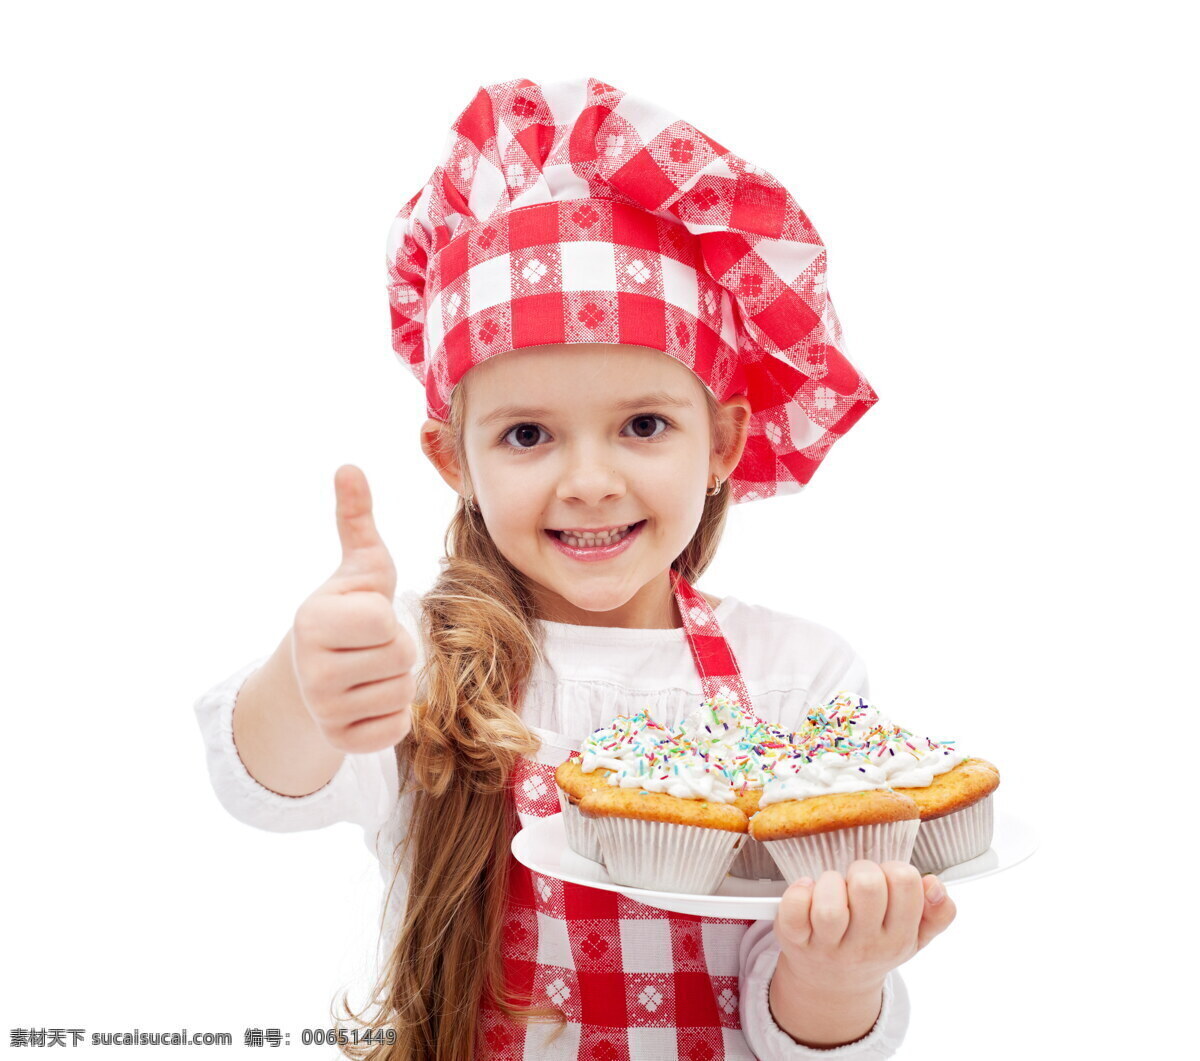 小 厨师 儿童 美女 可爱 蛋糕 甜点 女孩 外国人 称赞 商务人士 人物图片